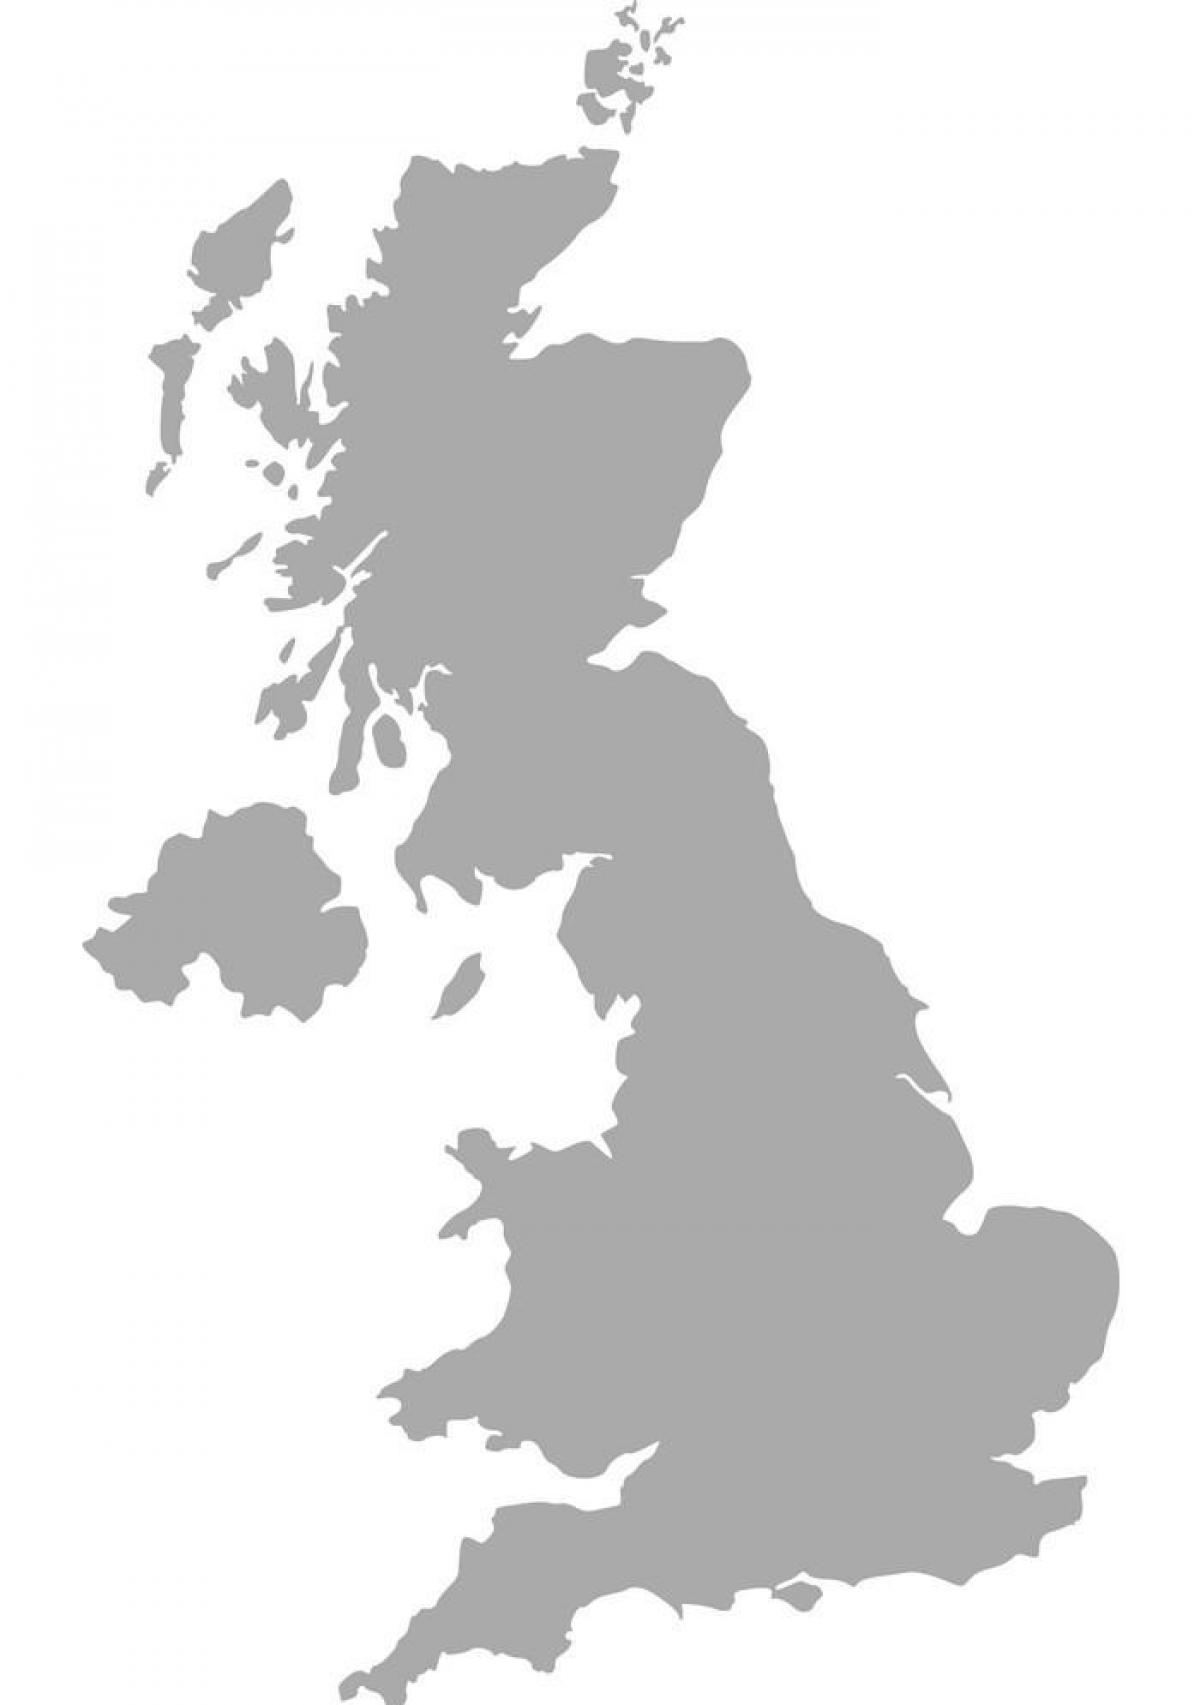 Verenigd Koninkrijk (UK) vectorkaart